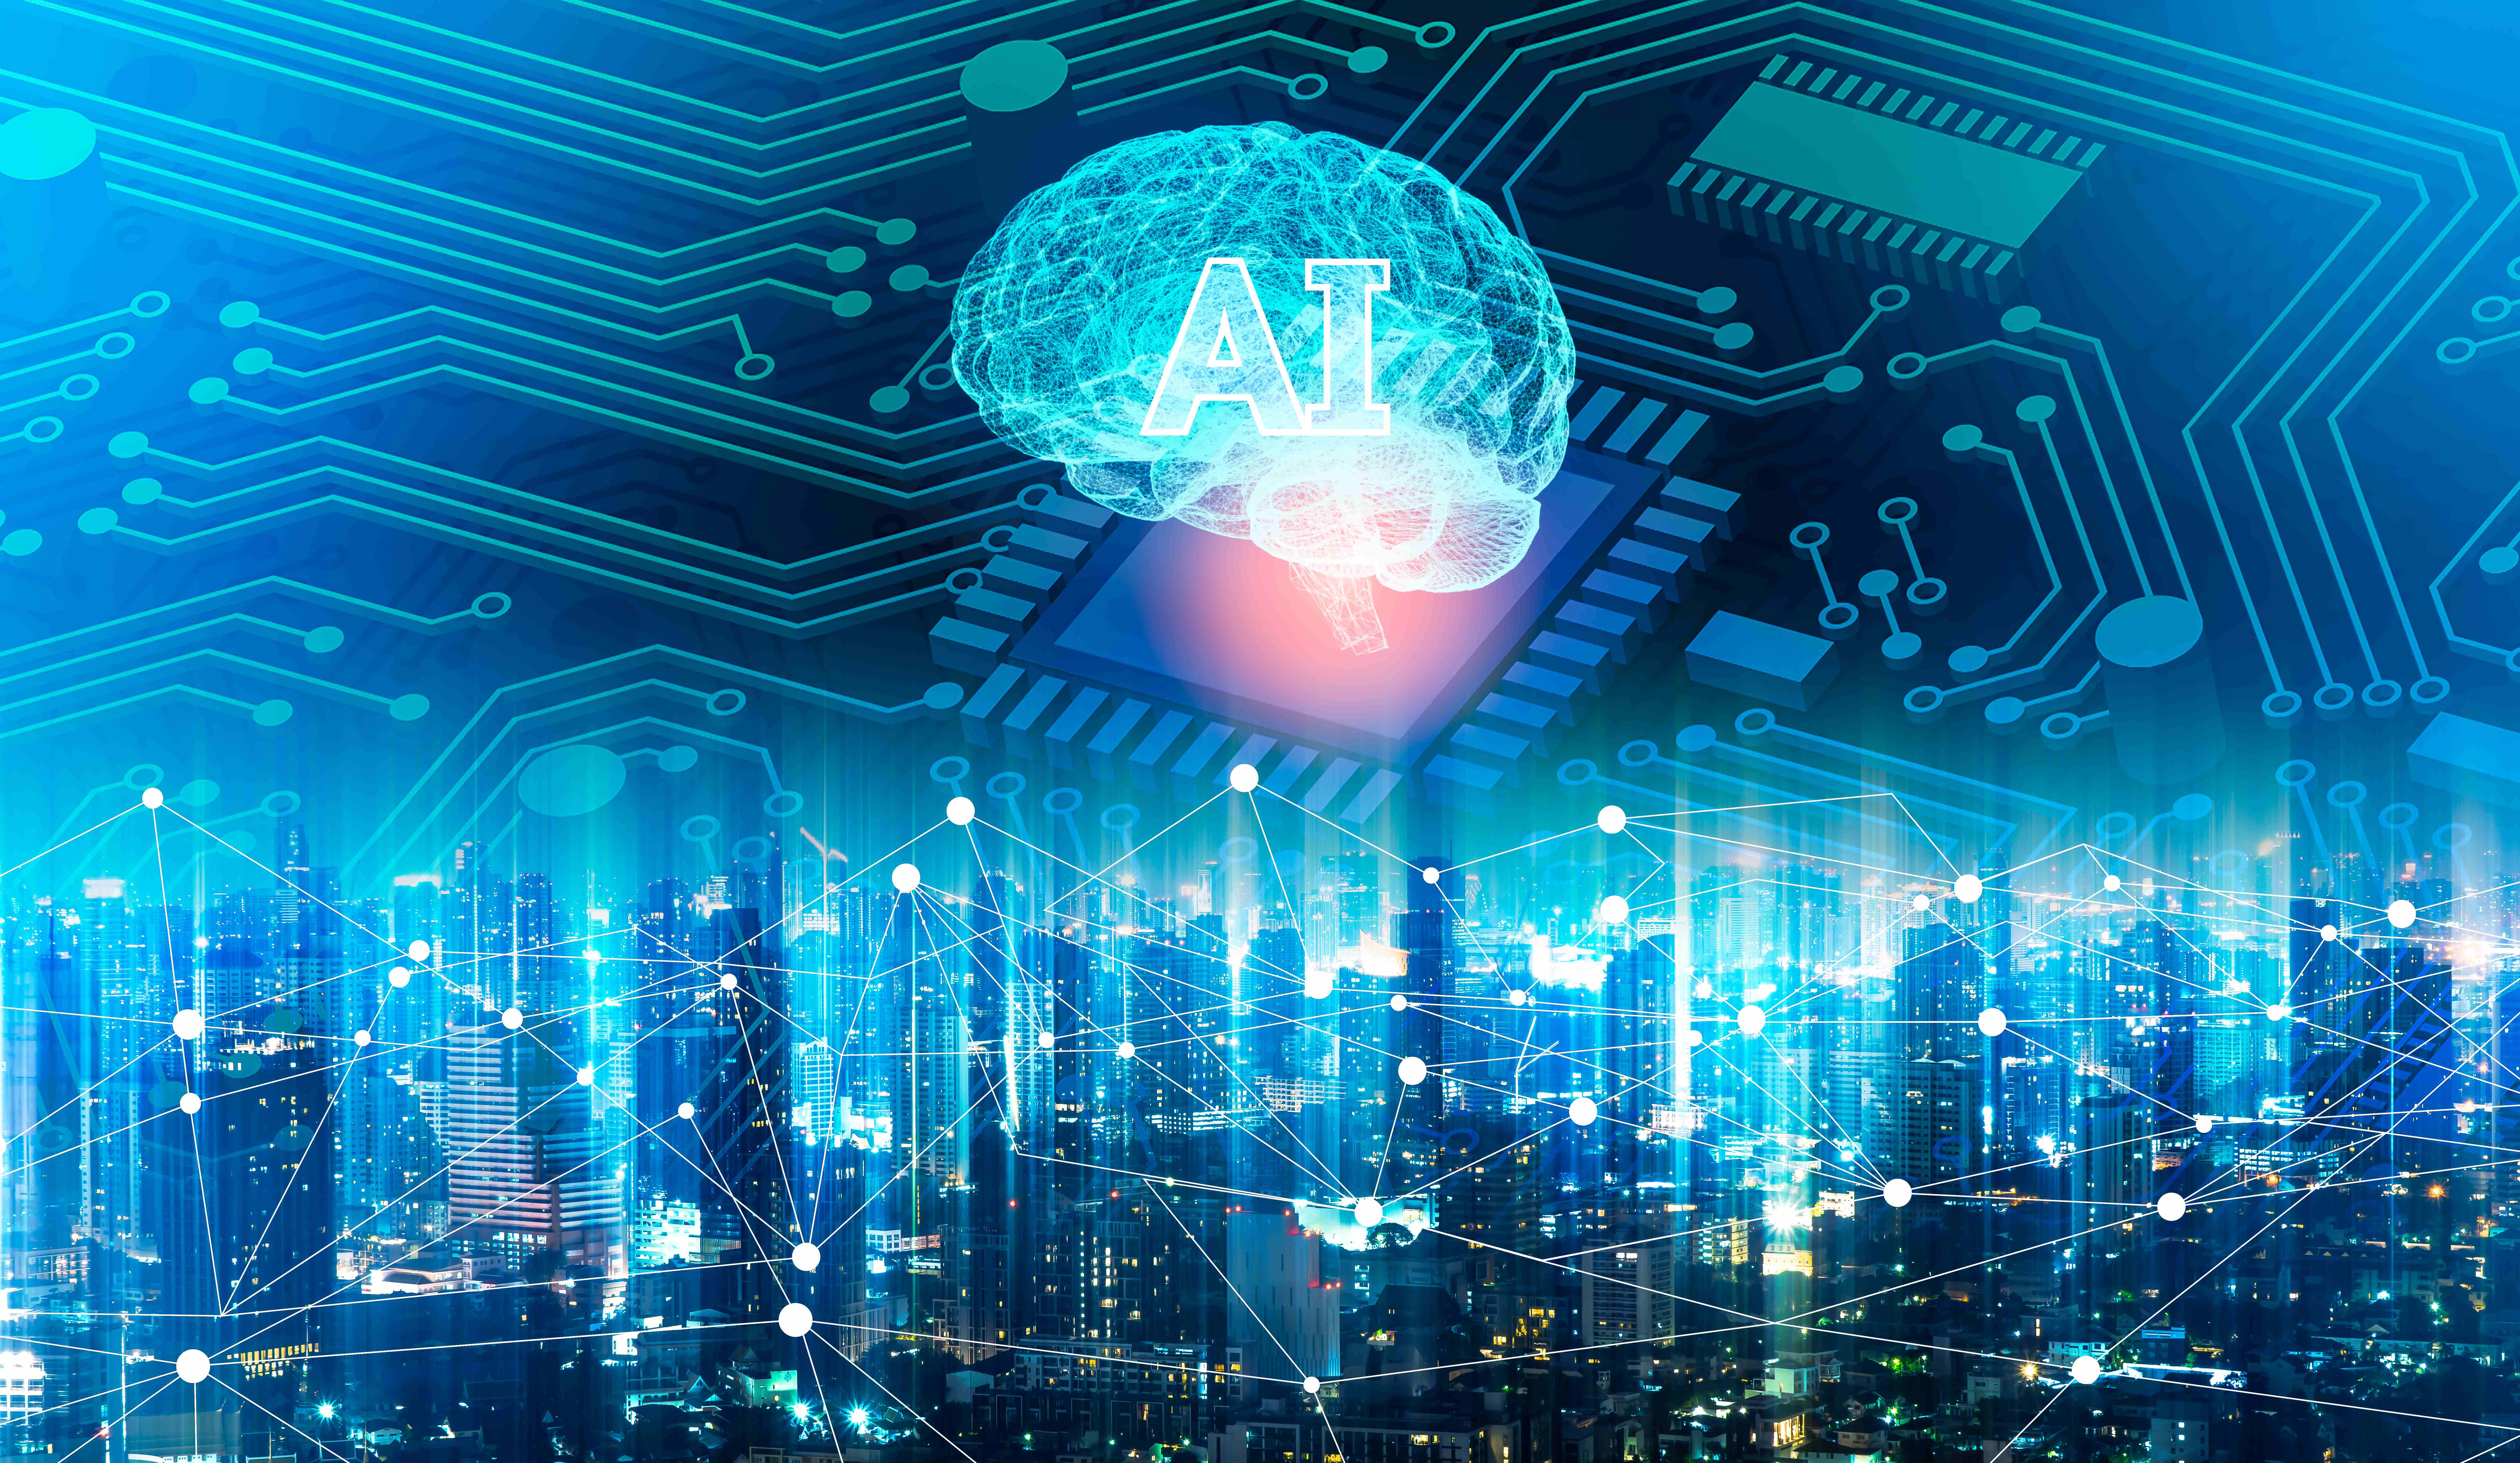 Umriss einer Stadt mit Netzwerk ind blau, im Hintergrund ein Mikrochip und darüber ein stilisiertes Gehirn mit den Buchstaben AI für Artificiall Intelligence.